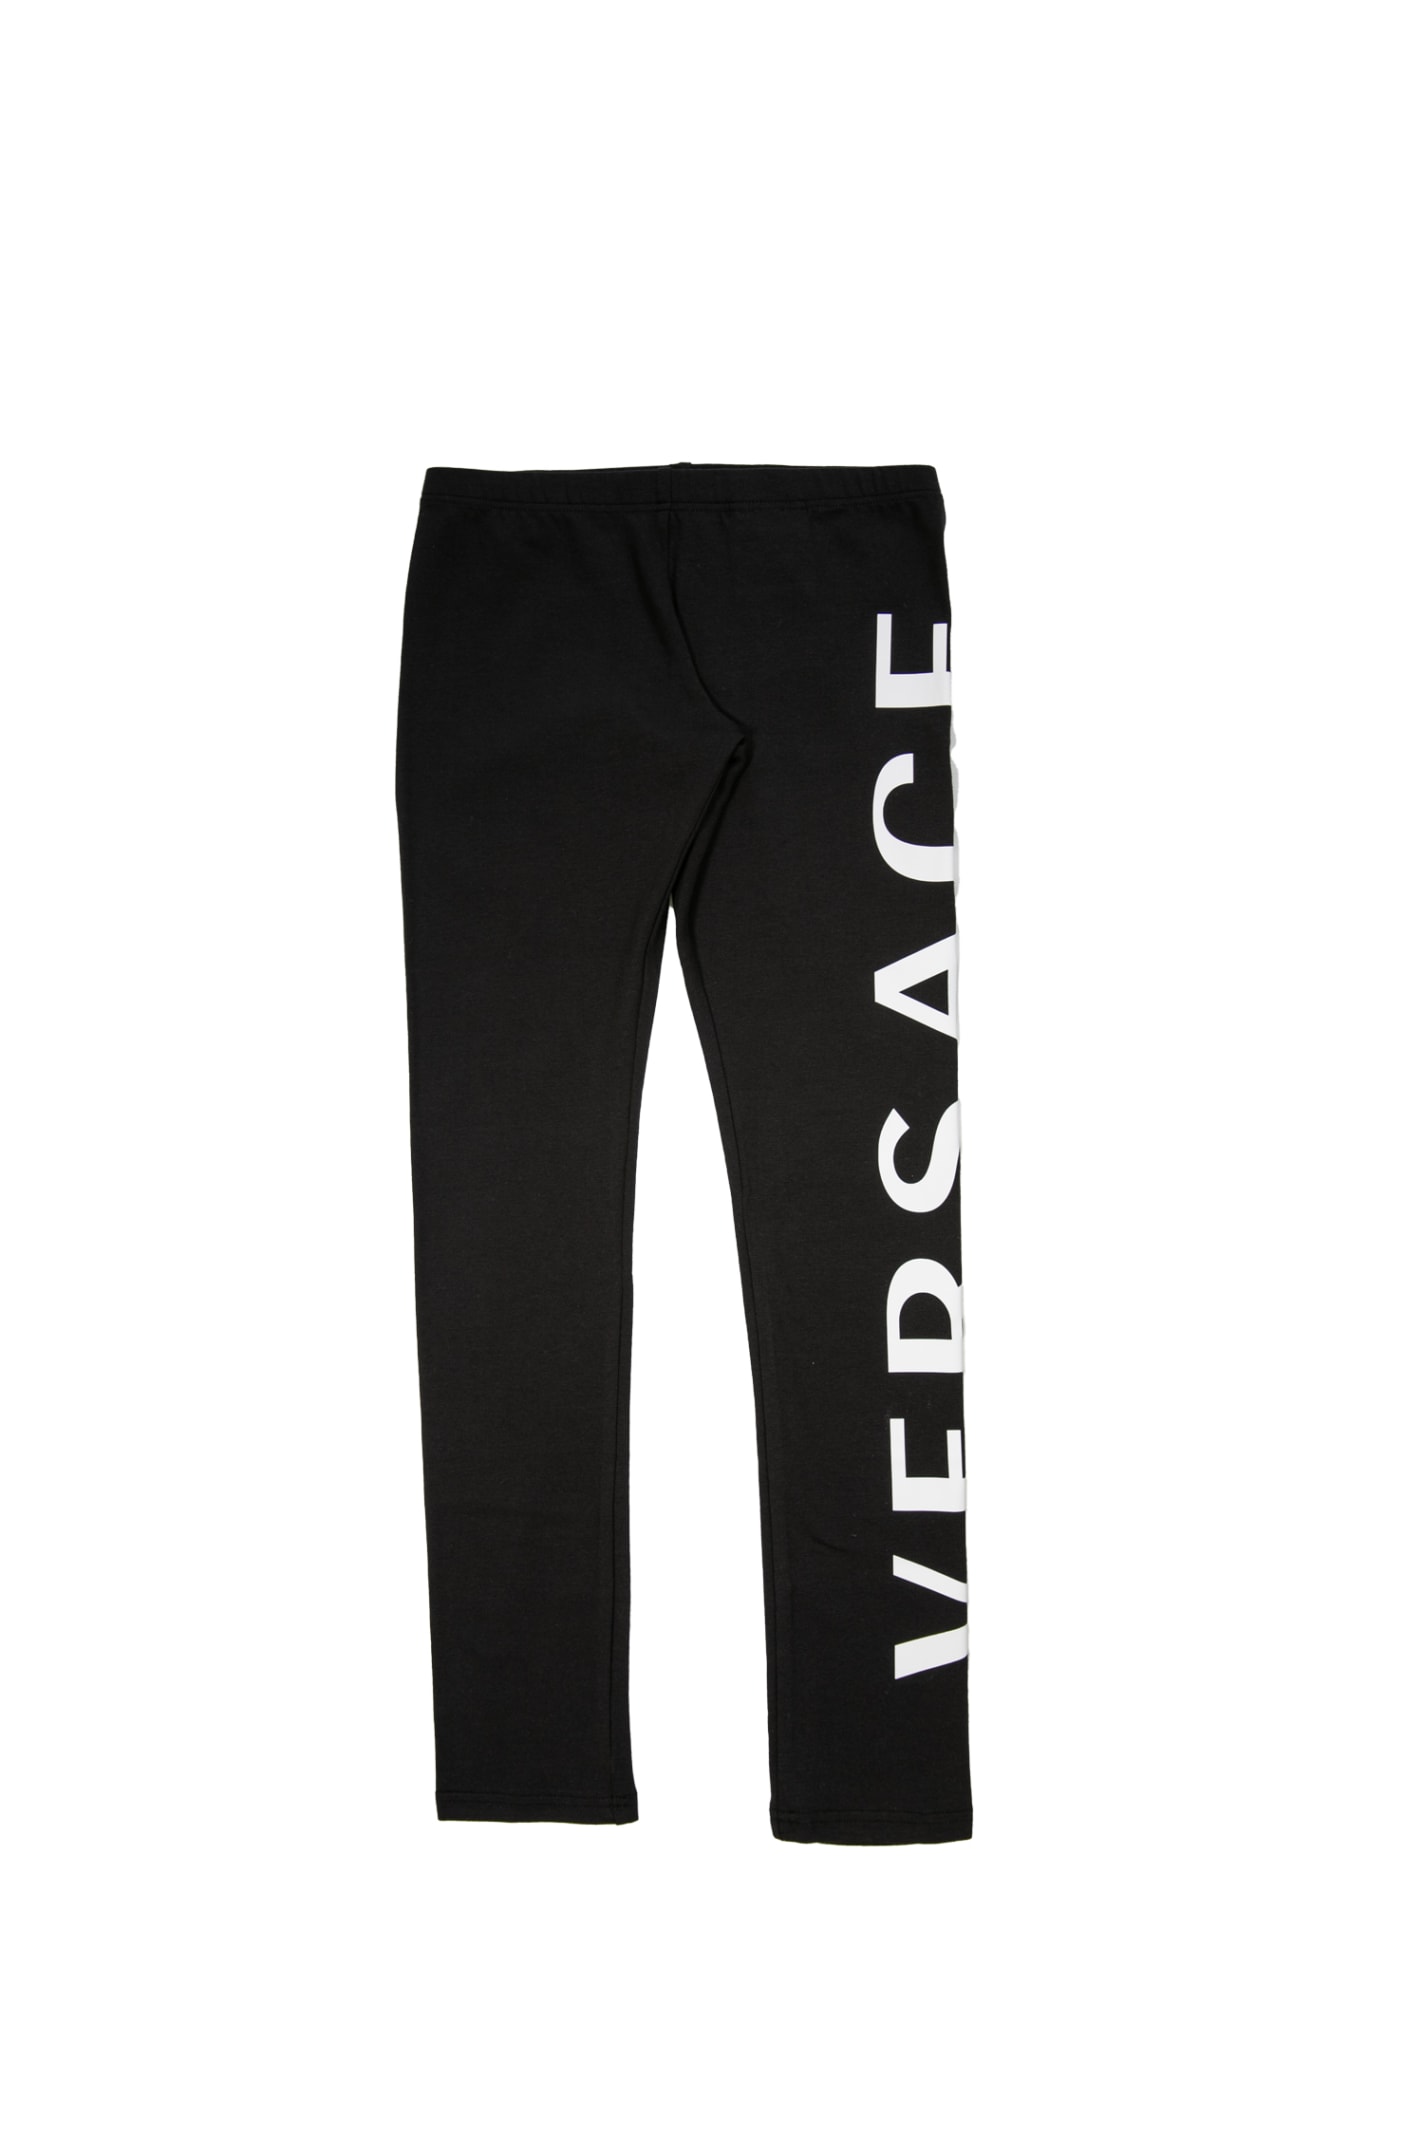 Versace Cotton Pants